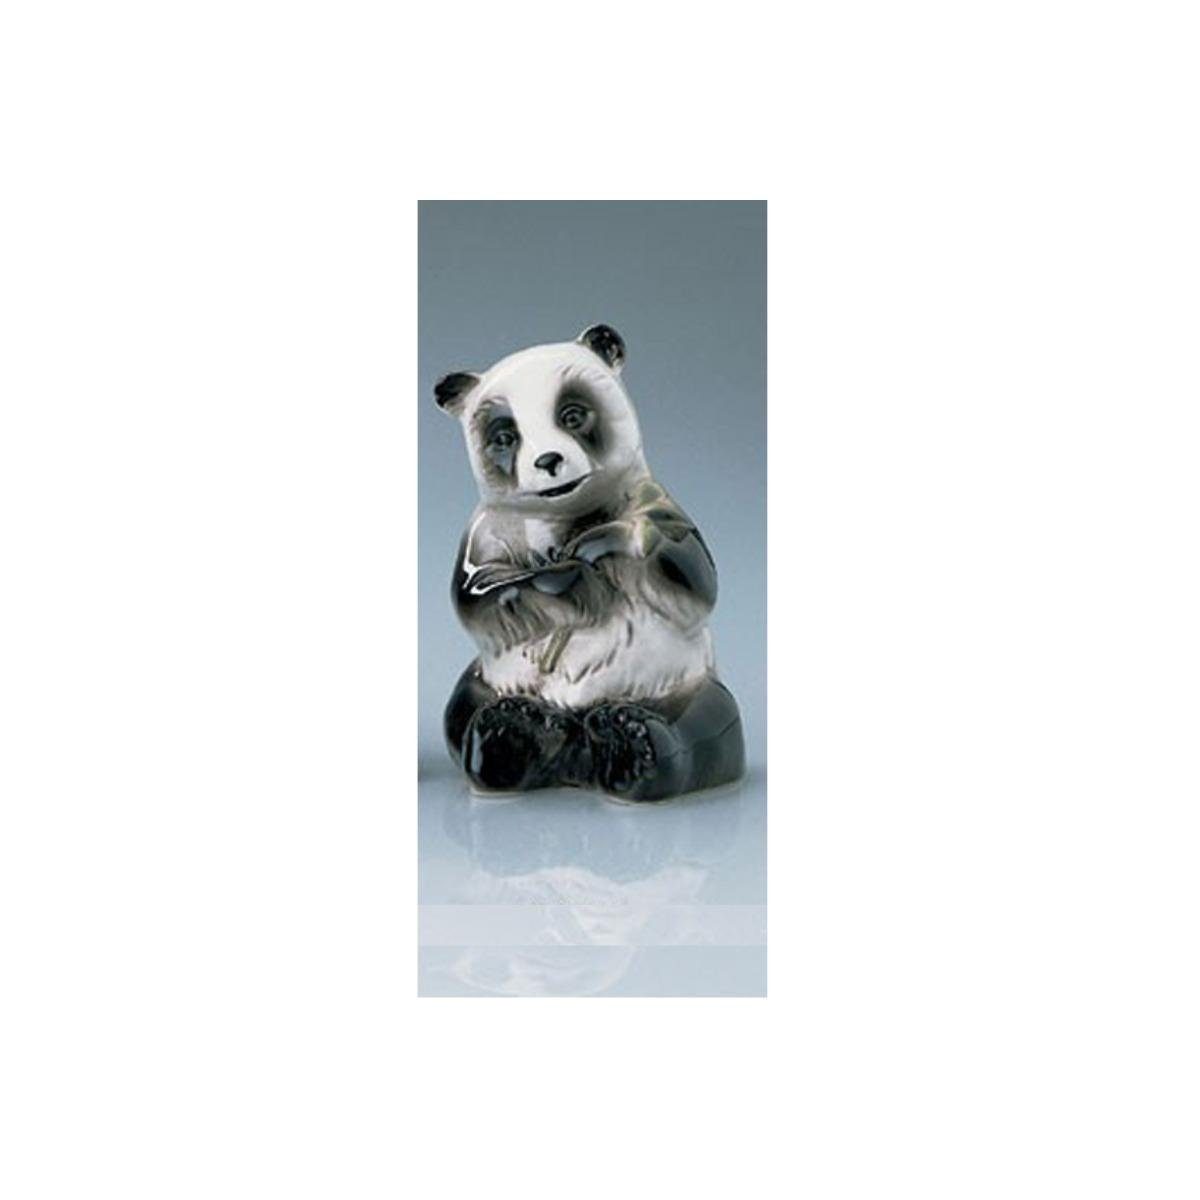 Wagner & Apel Porzellan Dekofigur 02599/40 sitzend aufrecht Pandabär, 